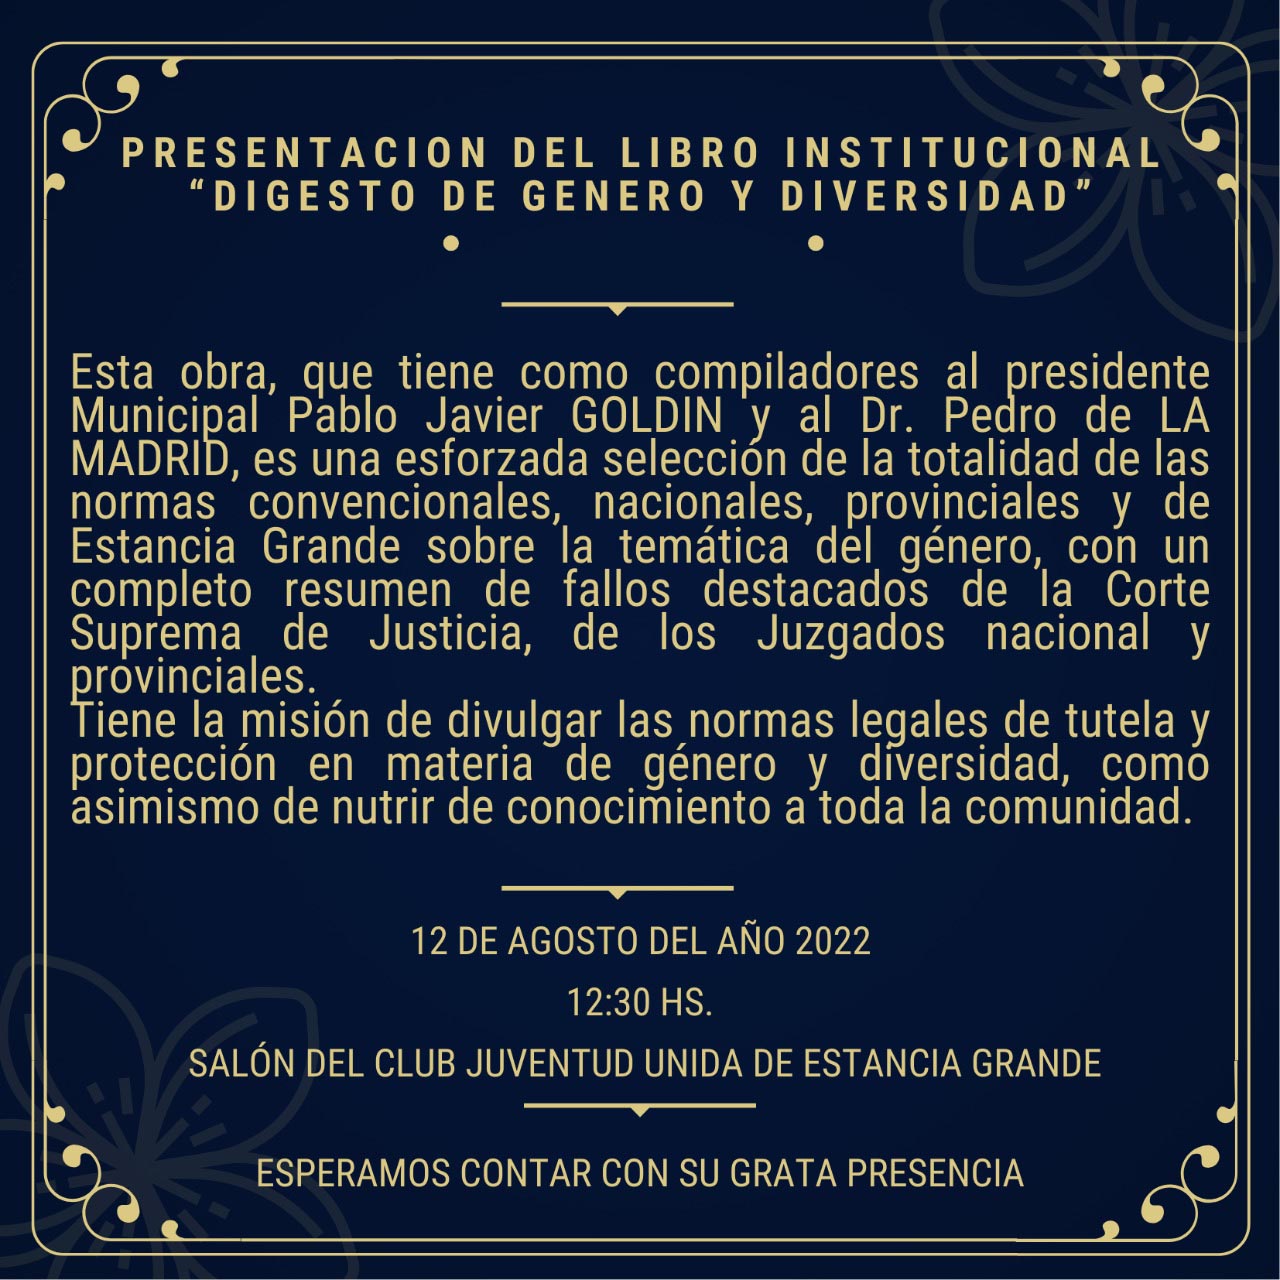 La invitación a la presentación del libro, del que Goldín y De la Madrid son compiladores